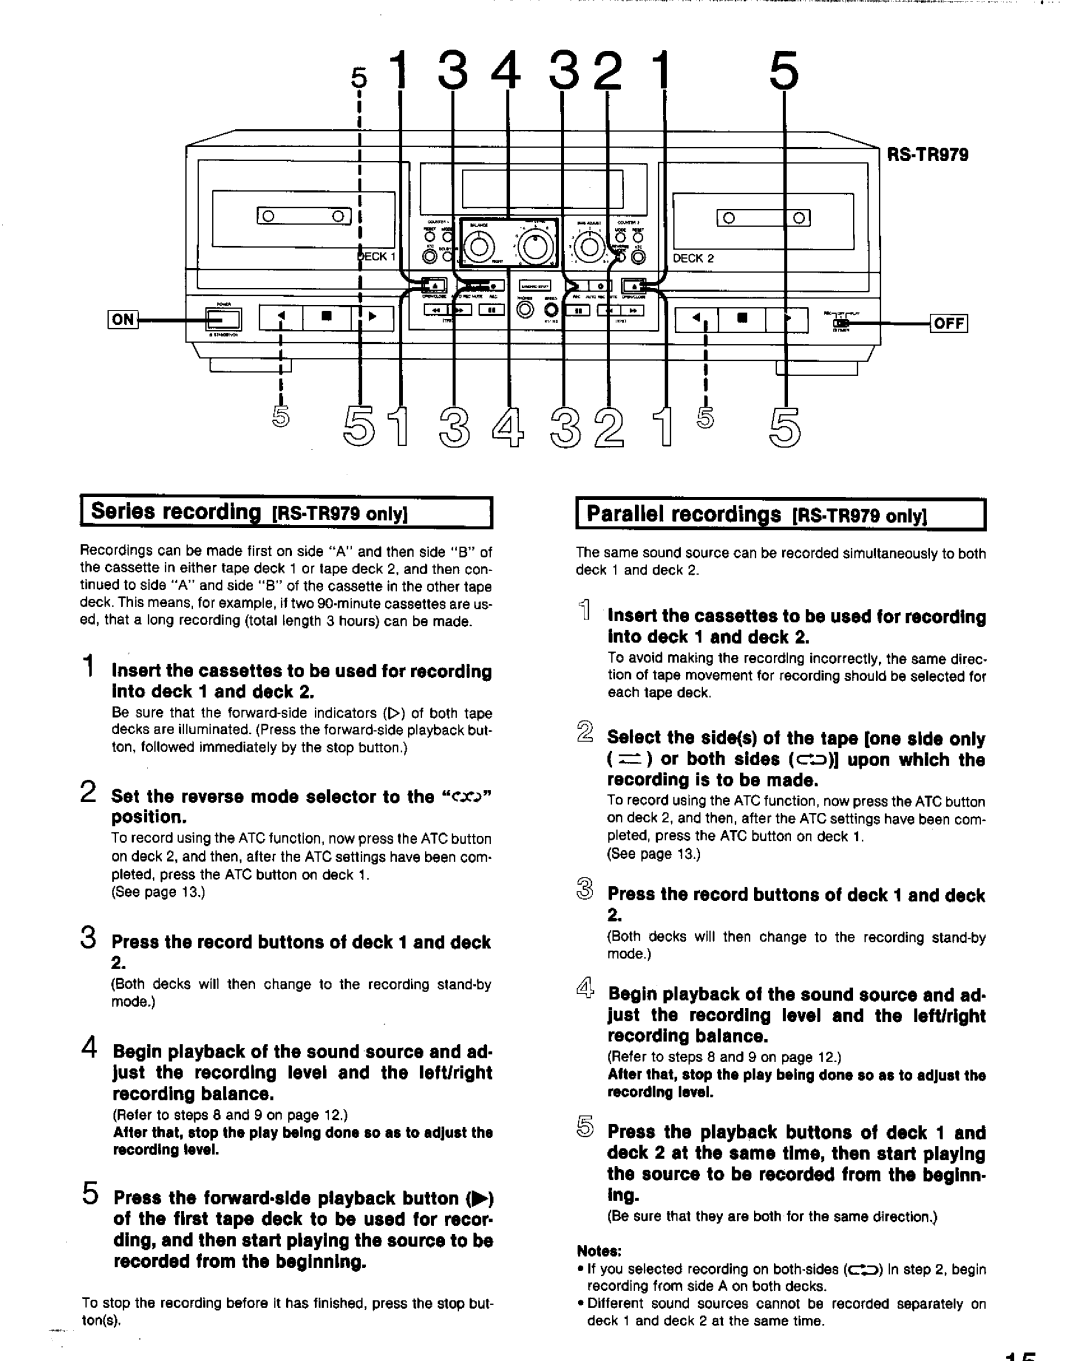 Technics RS-TR777, RS-TR979 manual 